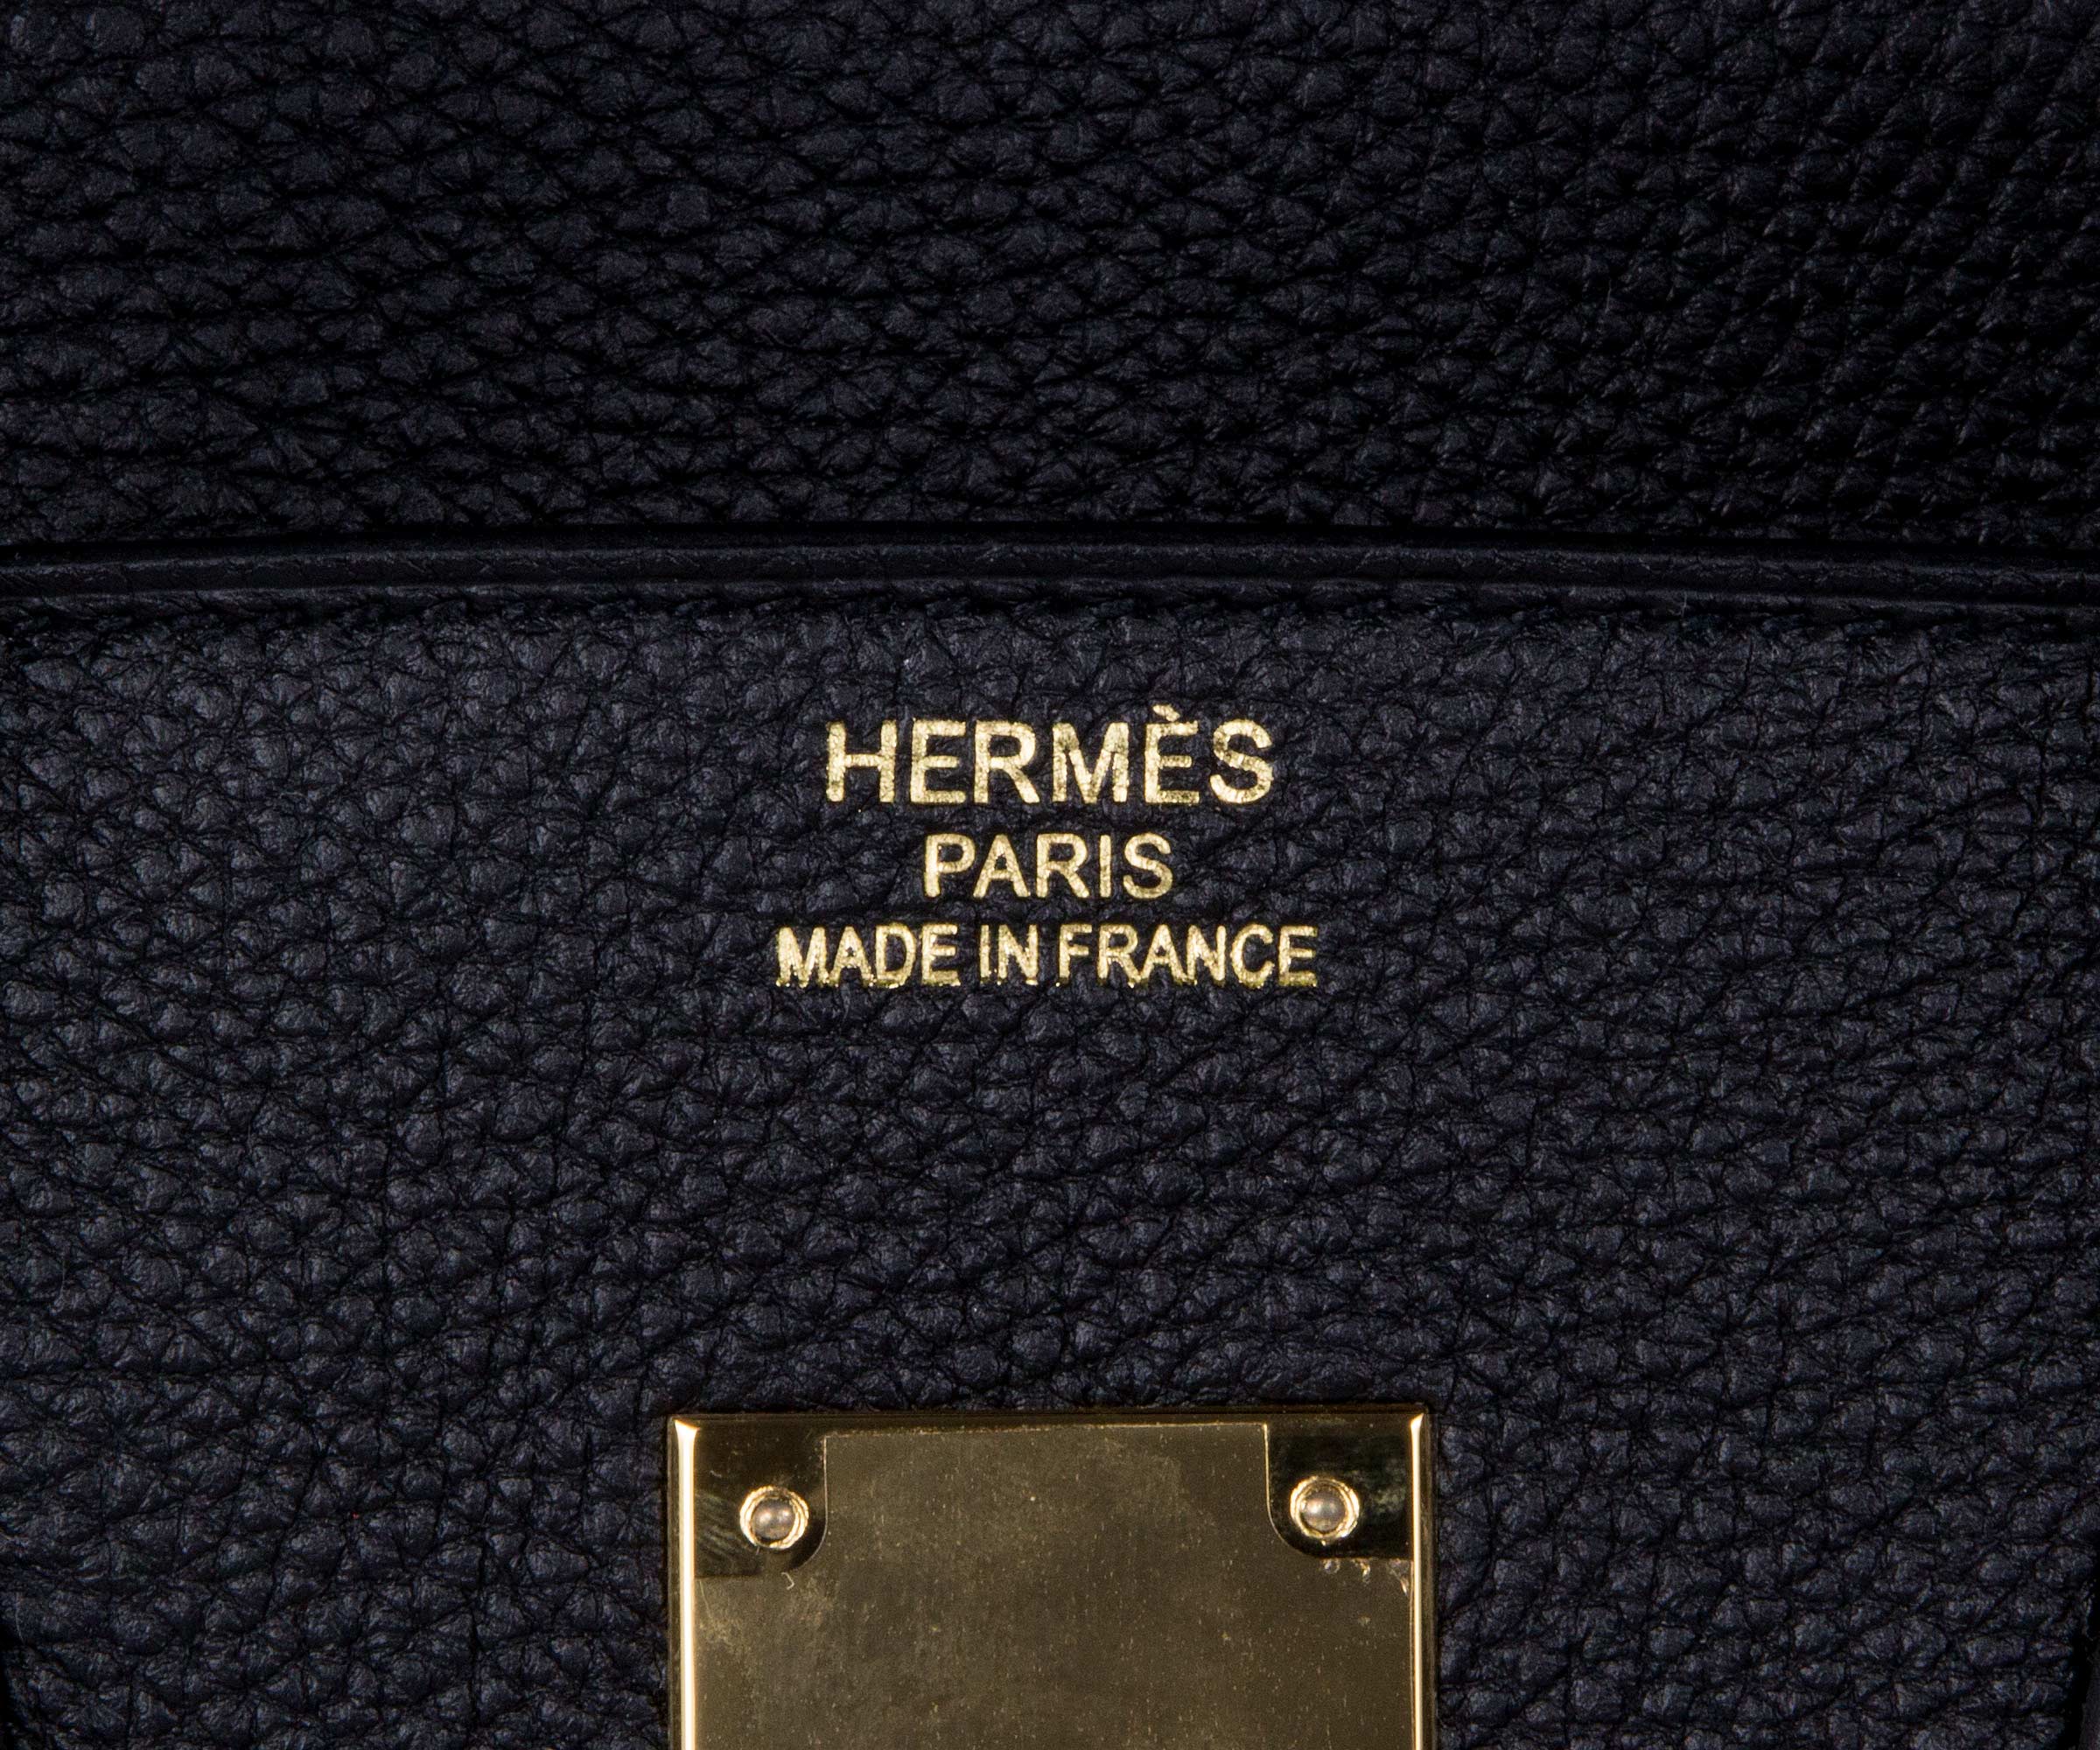 8 Ways To Authenticate A Hermès Birkin Bag